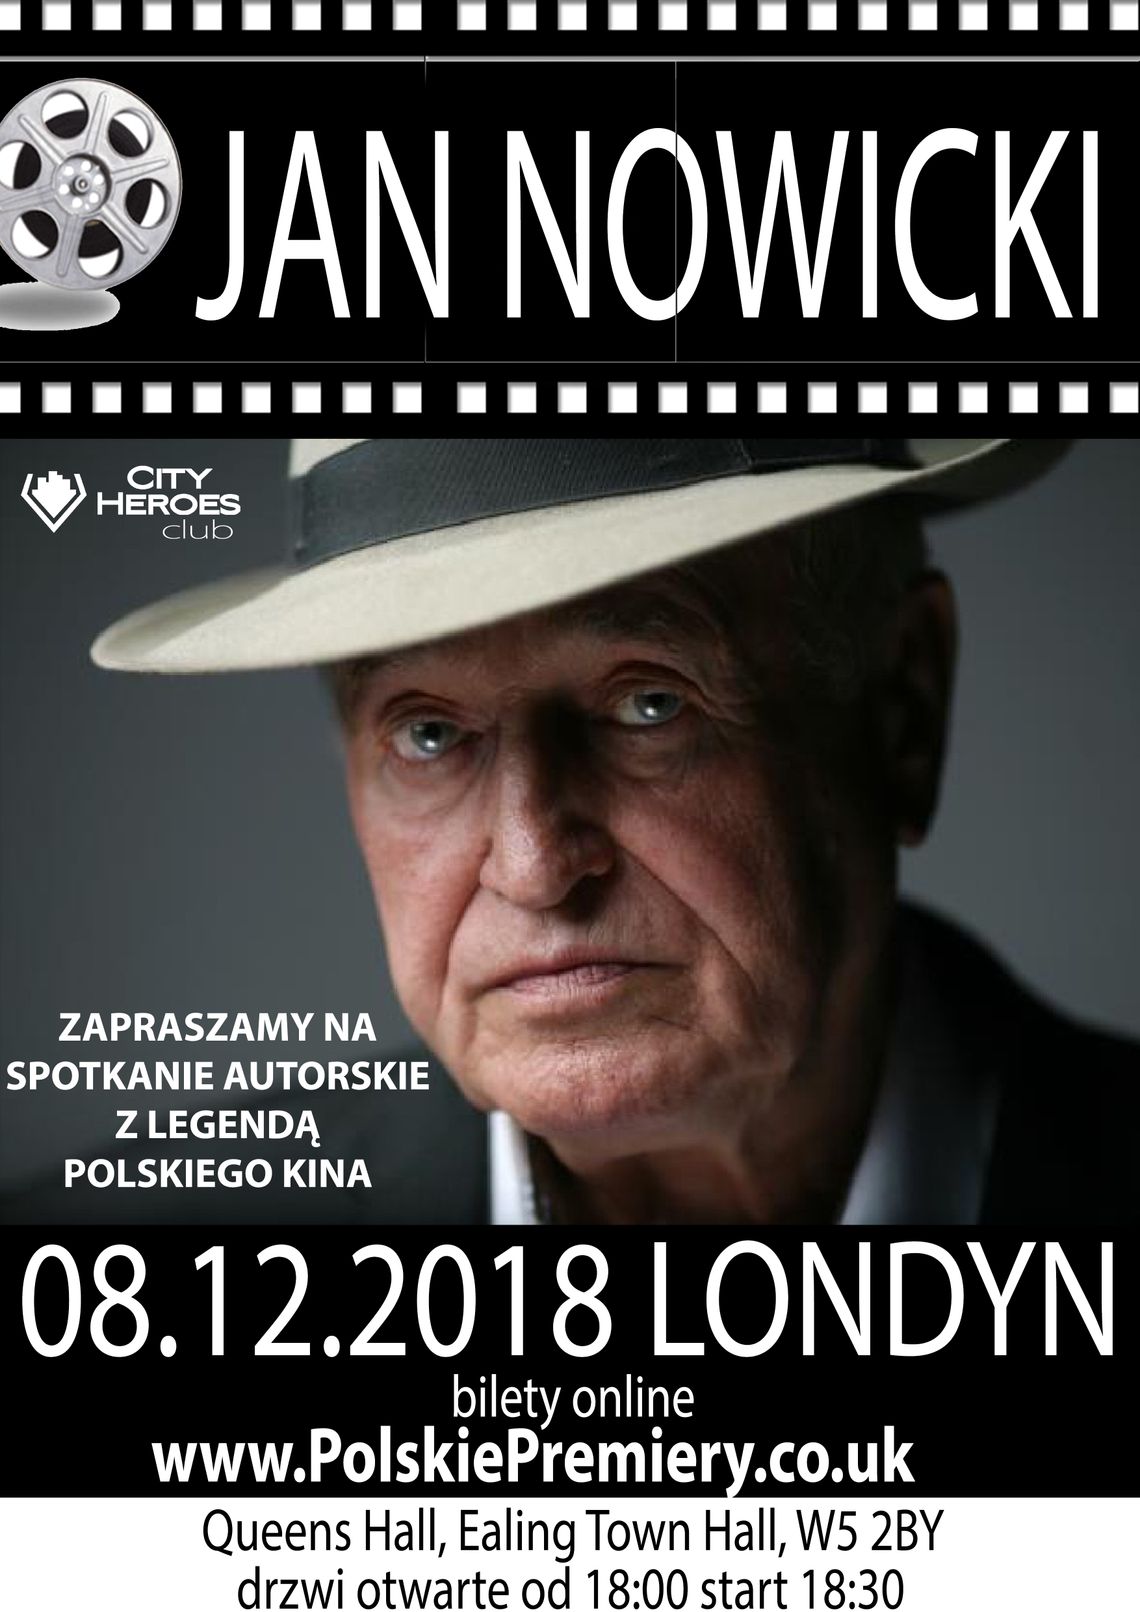 Polski Teatr Komedia City Heroes Club z Londynu zaprasza na wyjątkowe spotkanie. Gościem będzie legenda kina polskiego - Jan Nowicki.